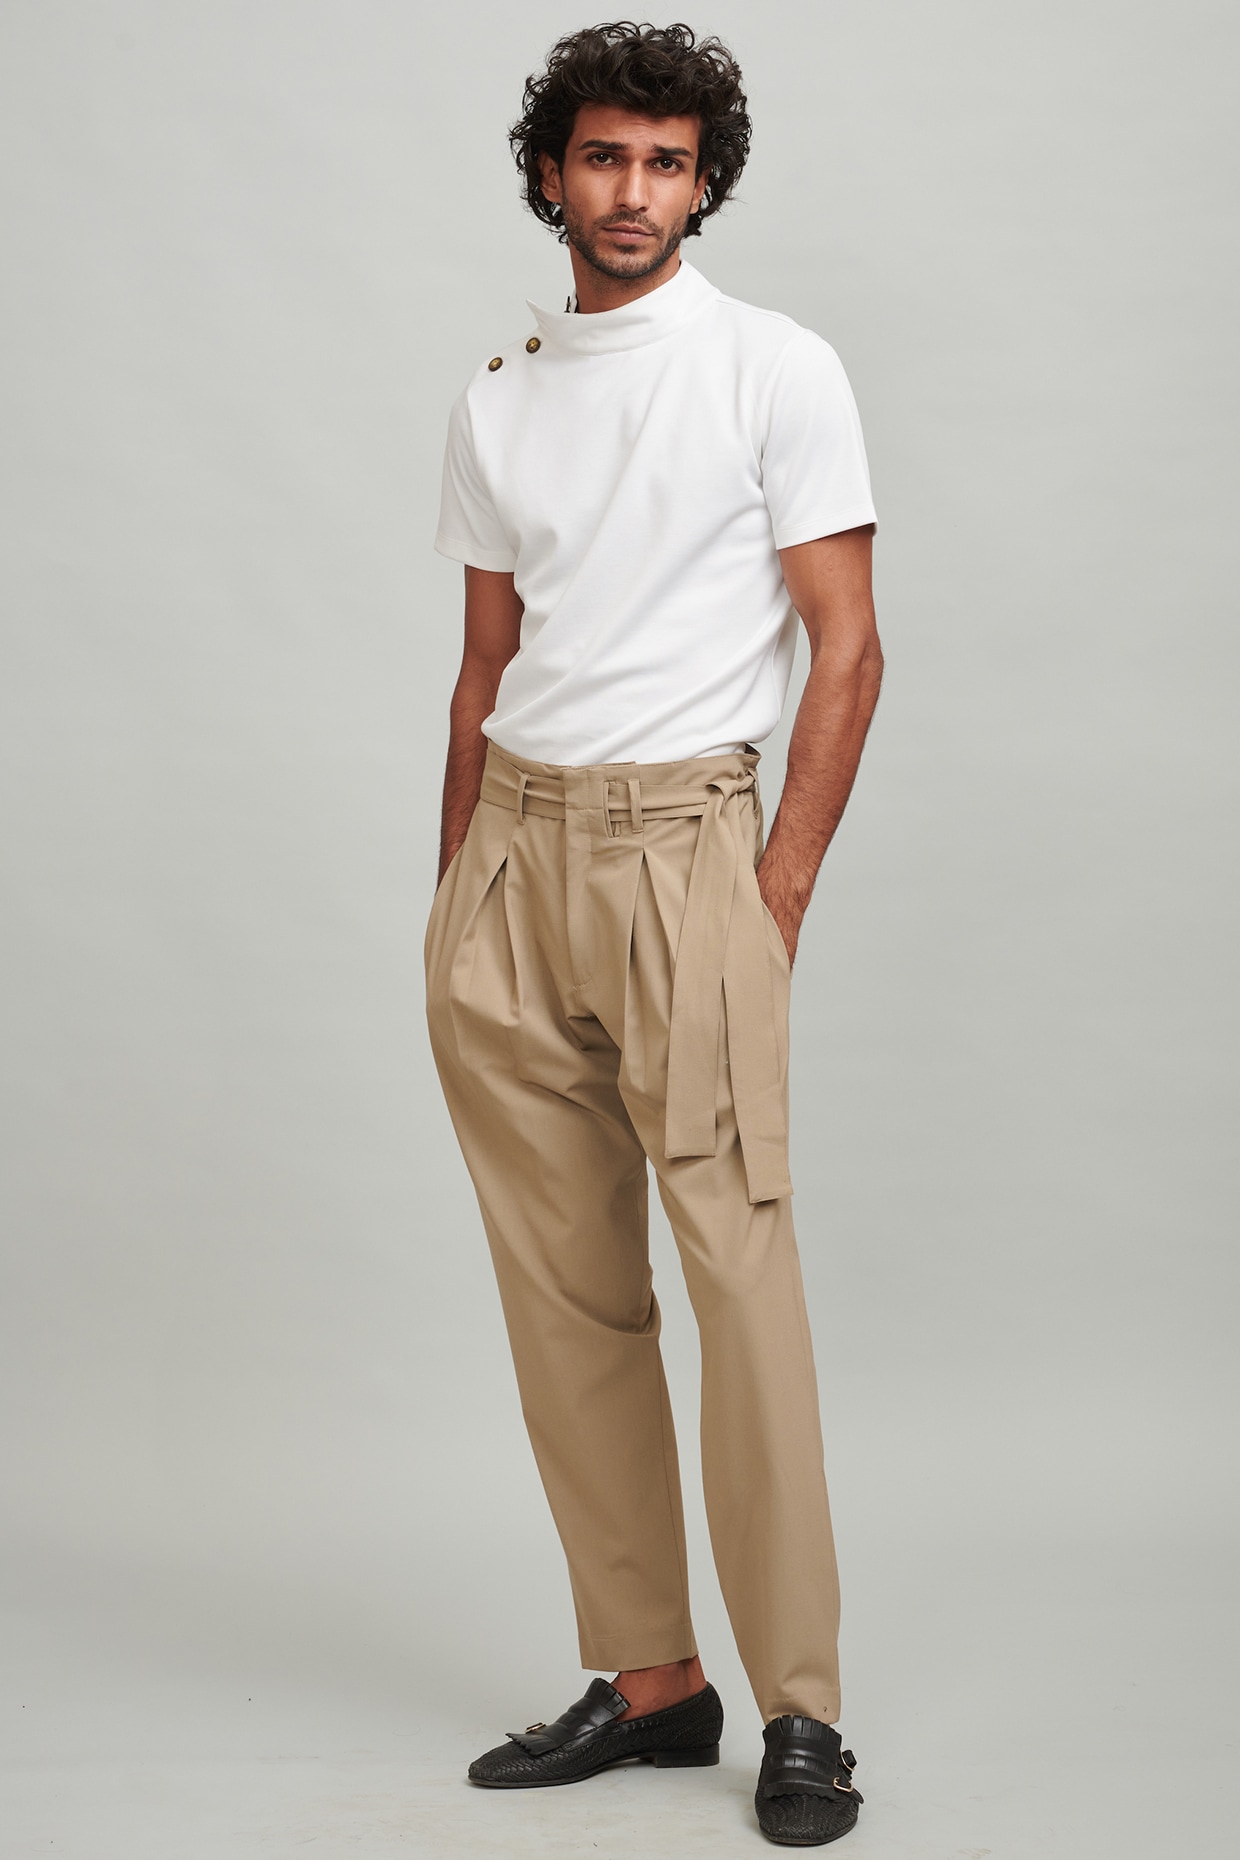 Men's Pleated Twill Trouser in Dark Stone | Sunspel